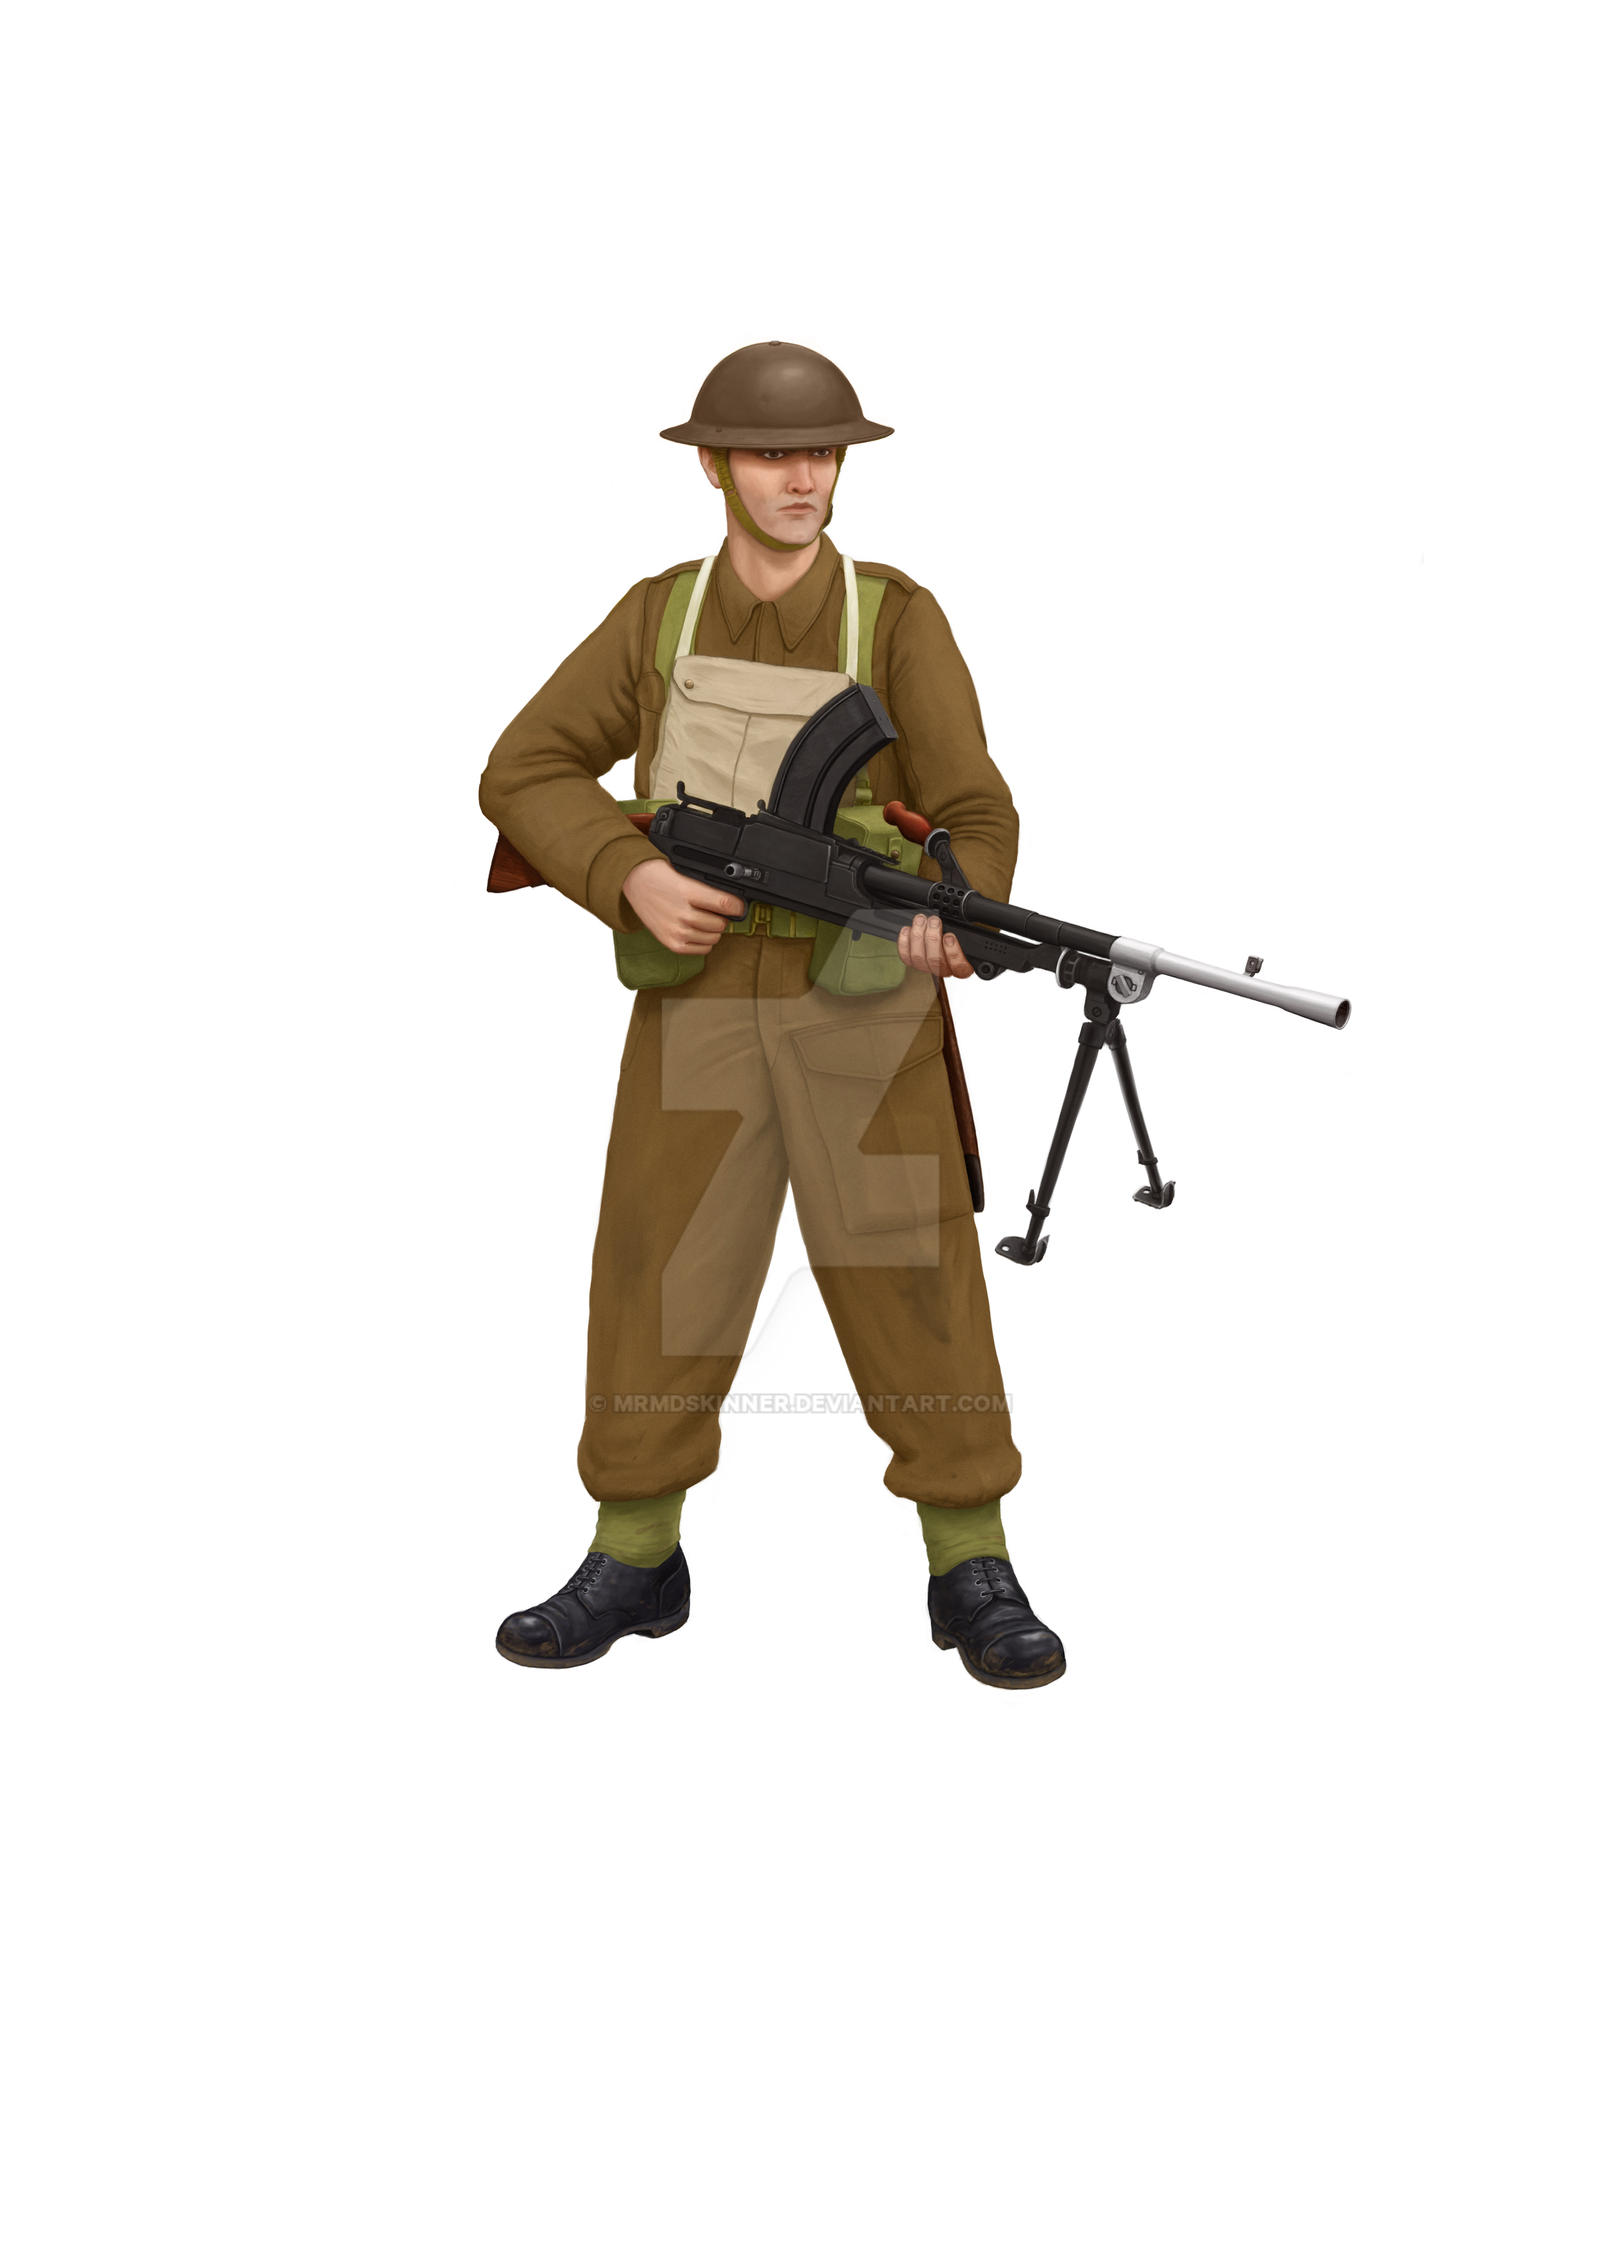 WW2 British paratrooper by sandu61 on DeviantArt